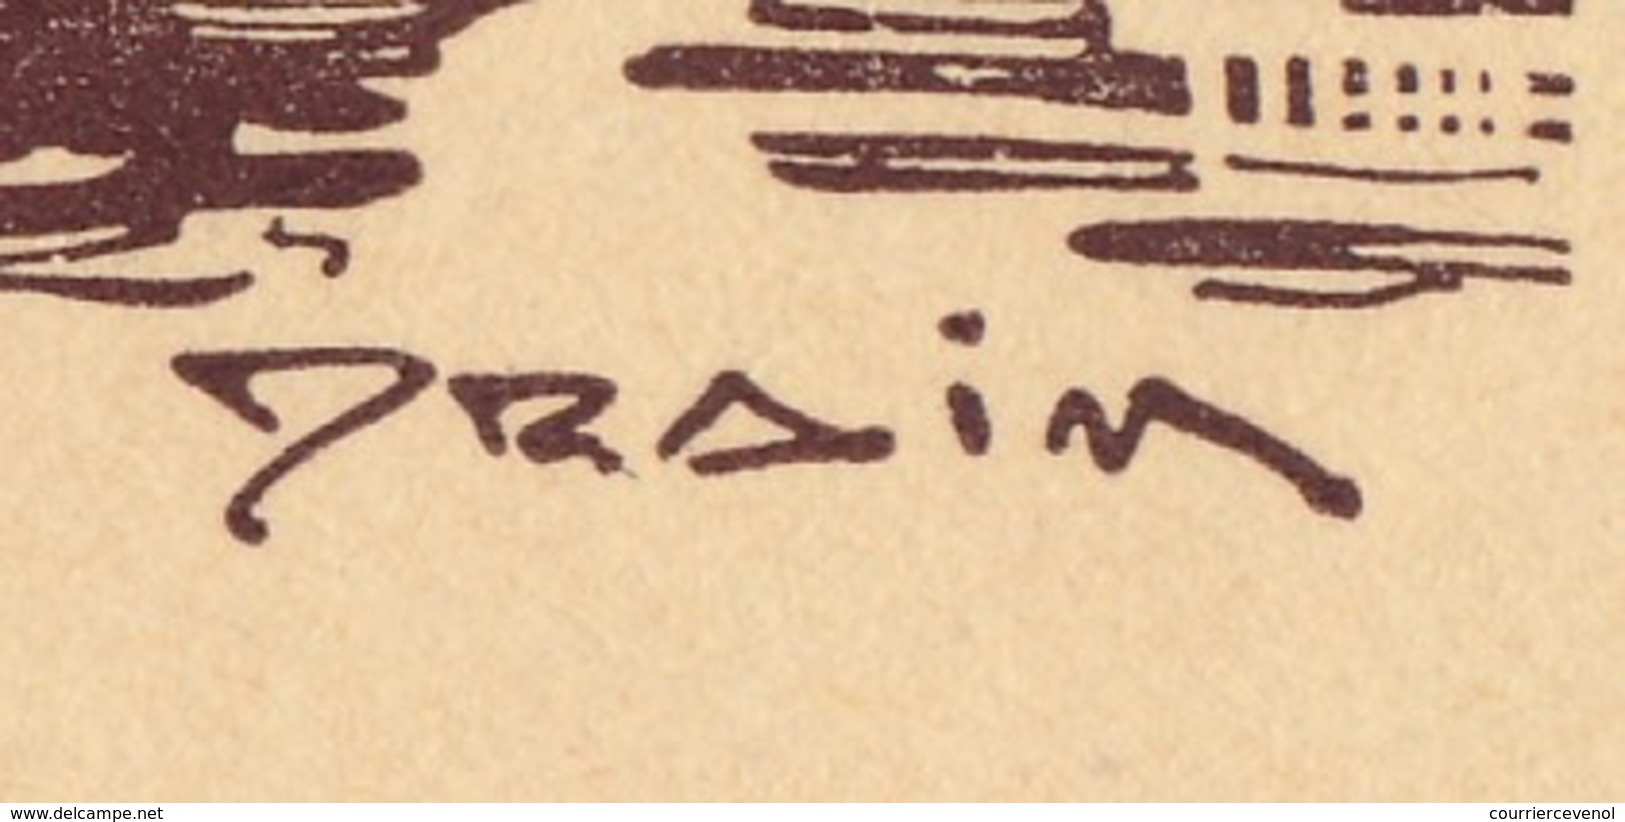 FRANCE - Carte-lettre Illustrée - Journée Du Timbre 1943 MARSEILLE - Dessin DRAIM - Affr 1,50 Bersier, Cachet Temporaire - Tag Der Briefmarke